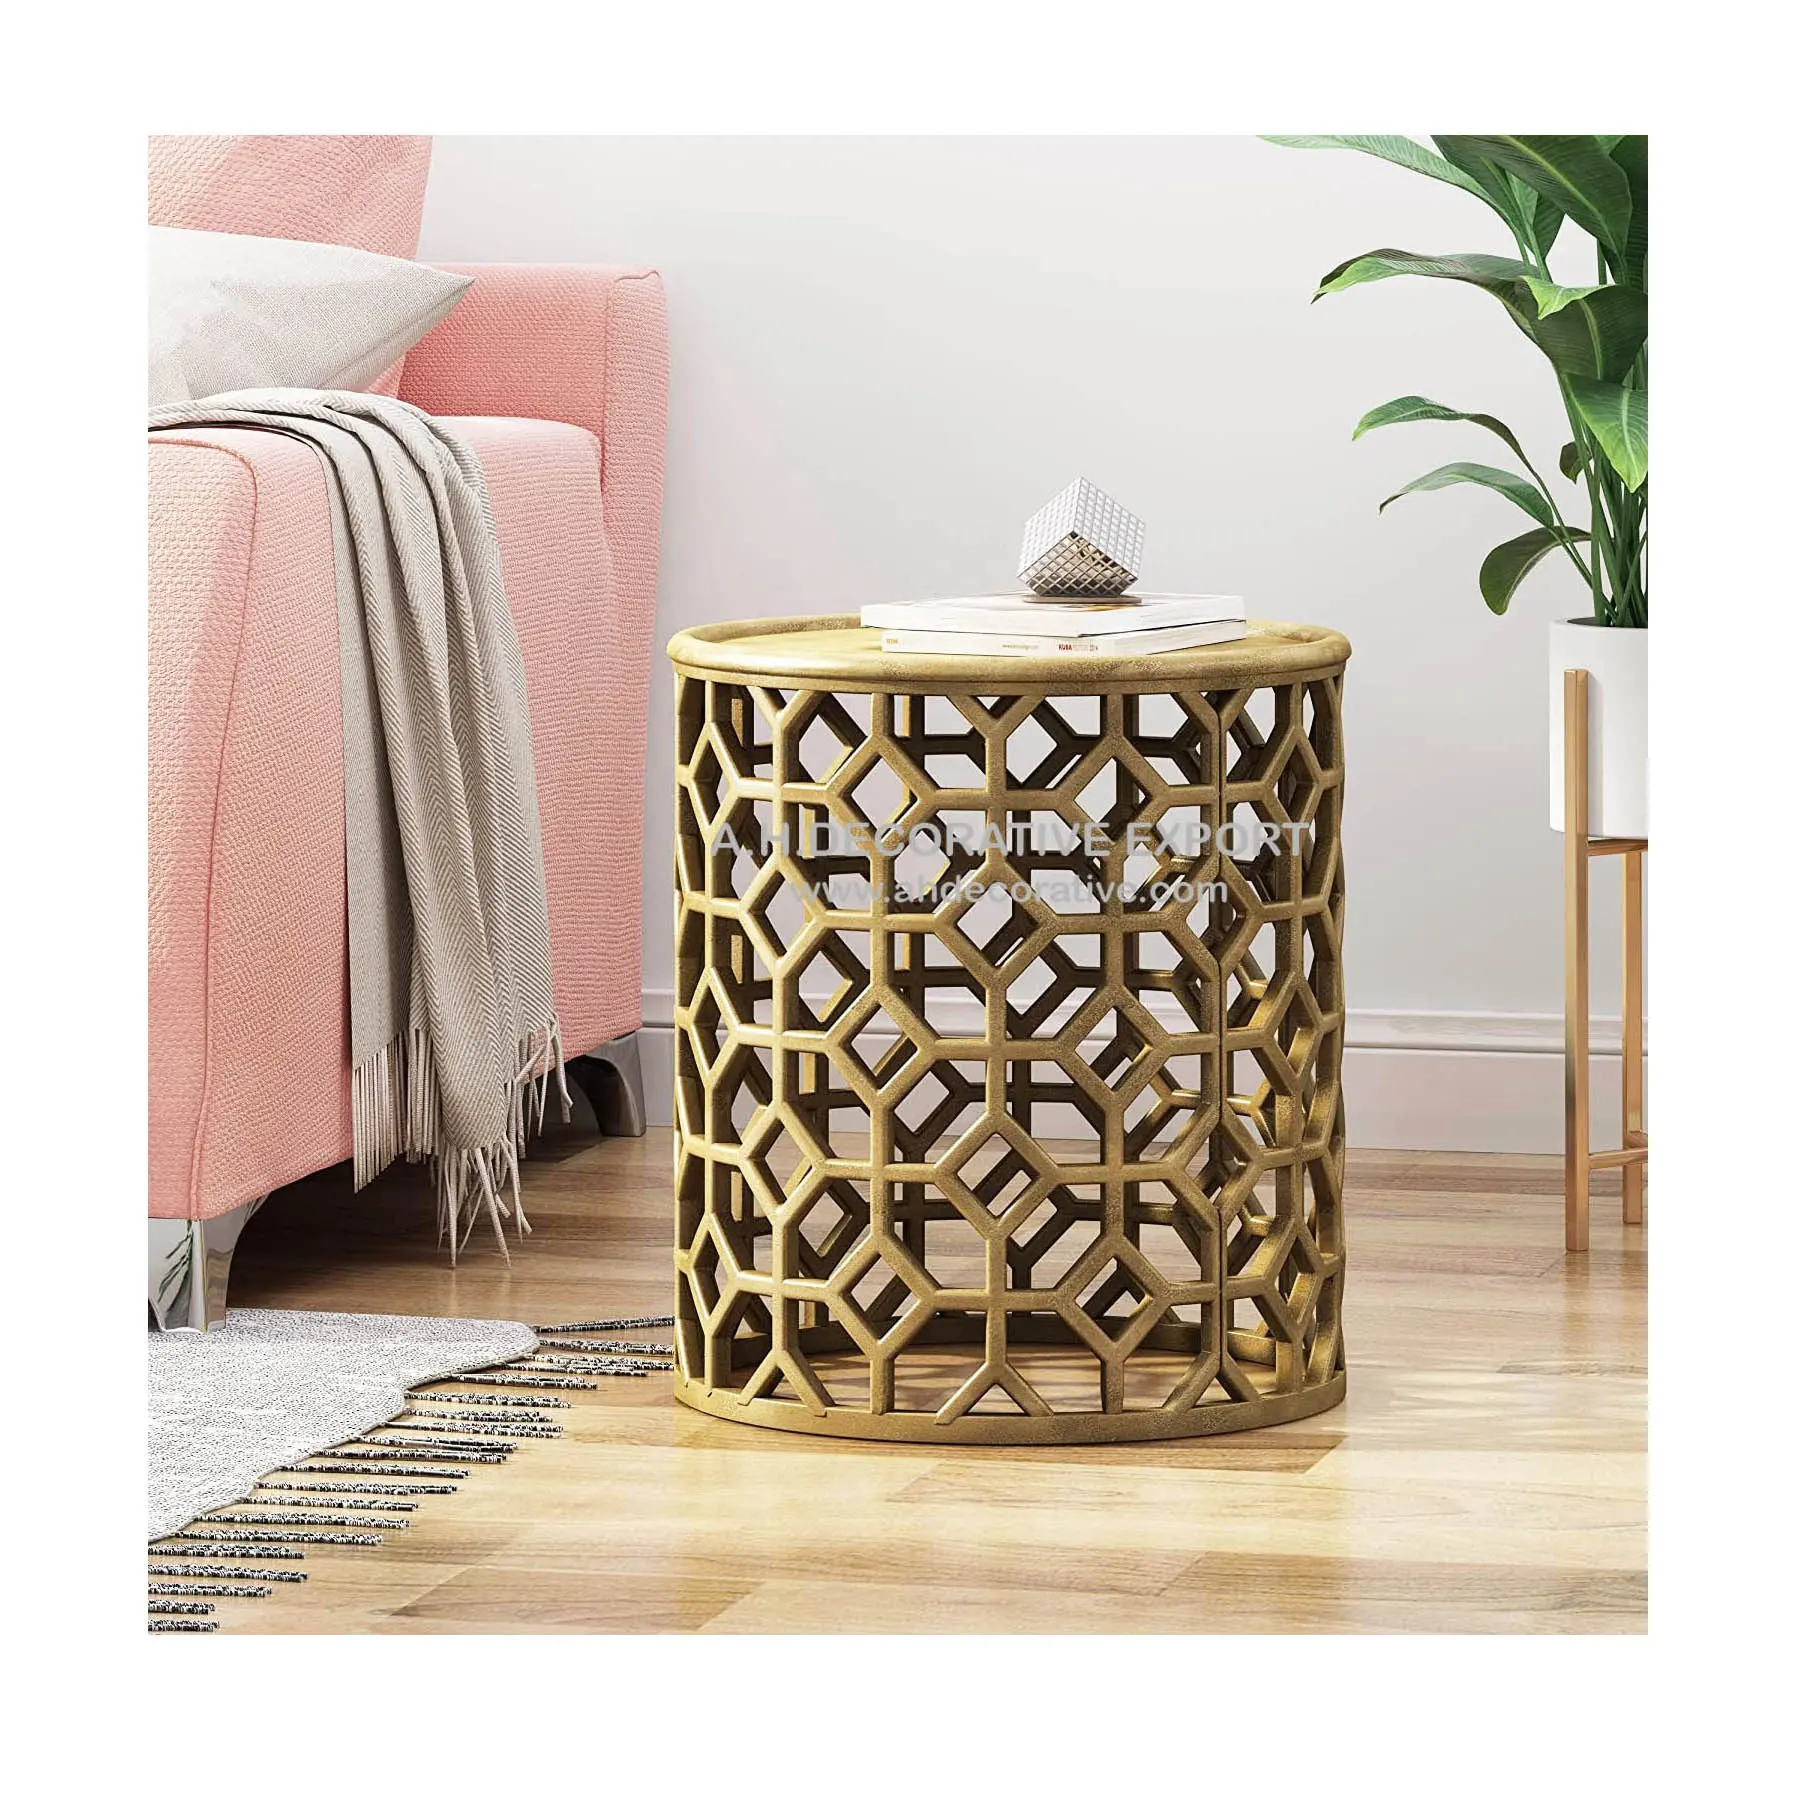 Tavolino dorato per soggiorno tavolino in alluminio metallico di alta qualità per la decorazione di interni ed esterni tavolino all'ingrosso